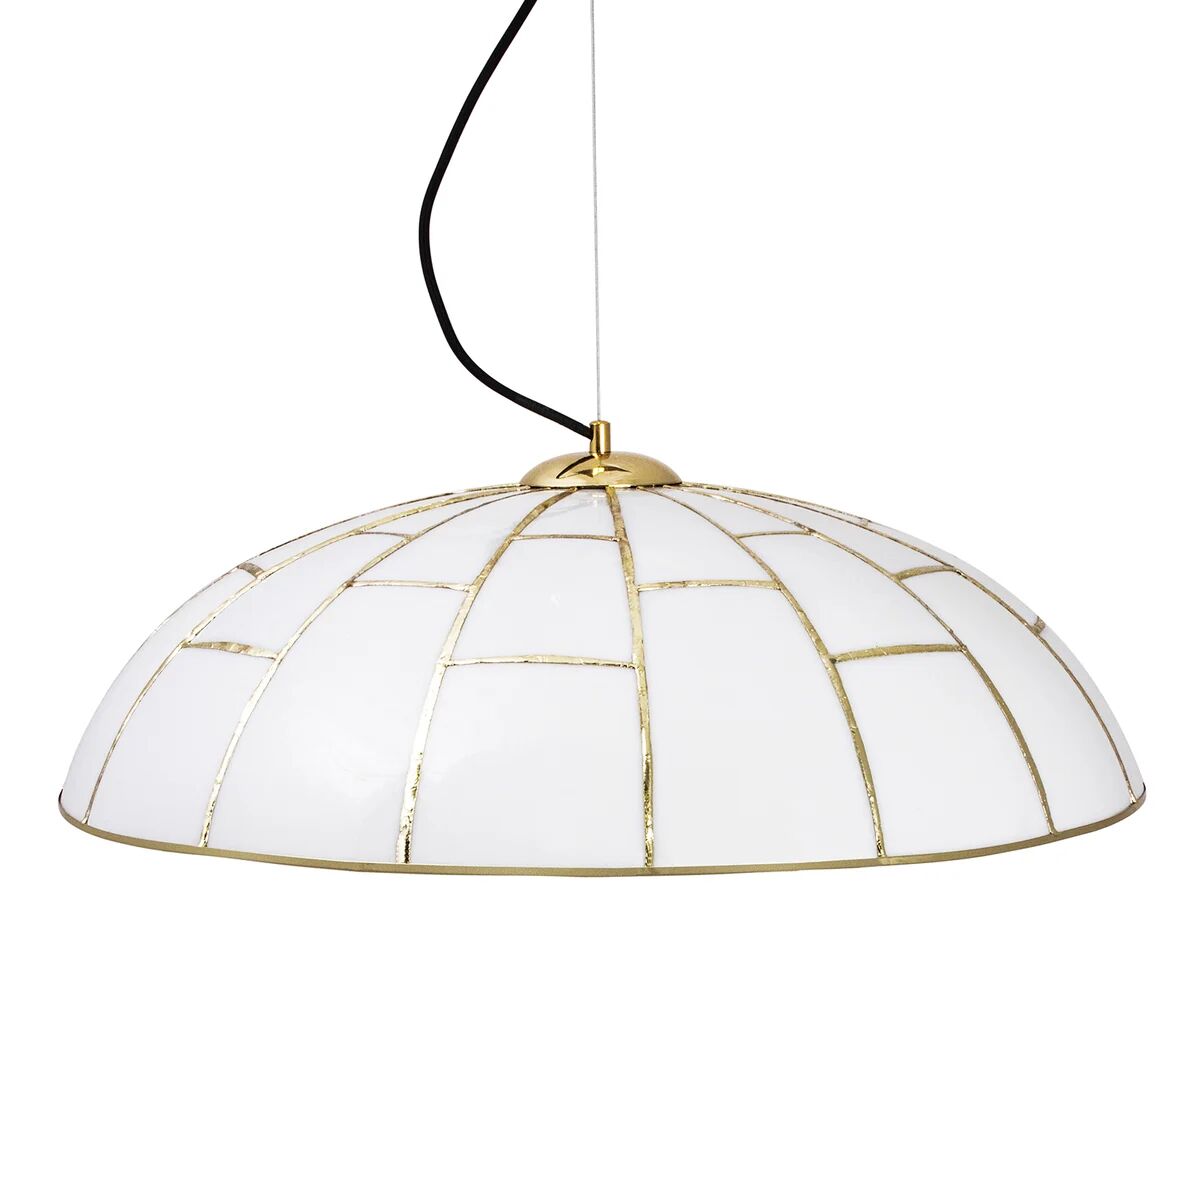 Globen Lighting Ombrello pendel Ø60 cm hvitt glass Messing